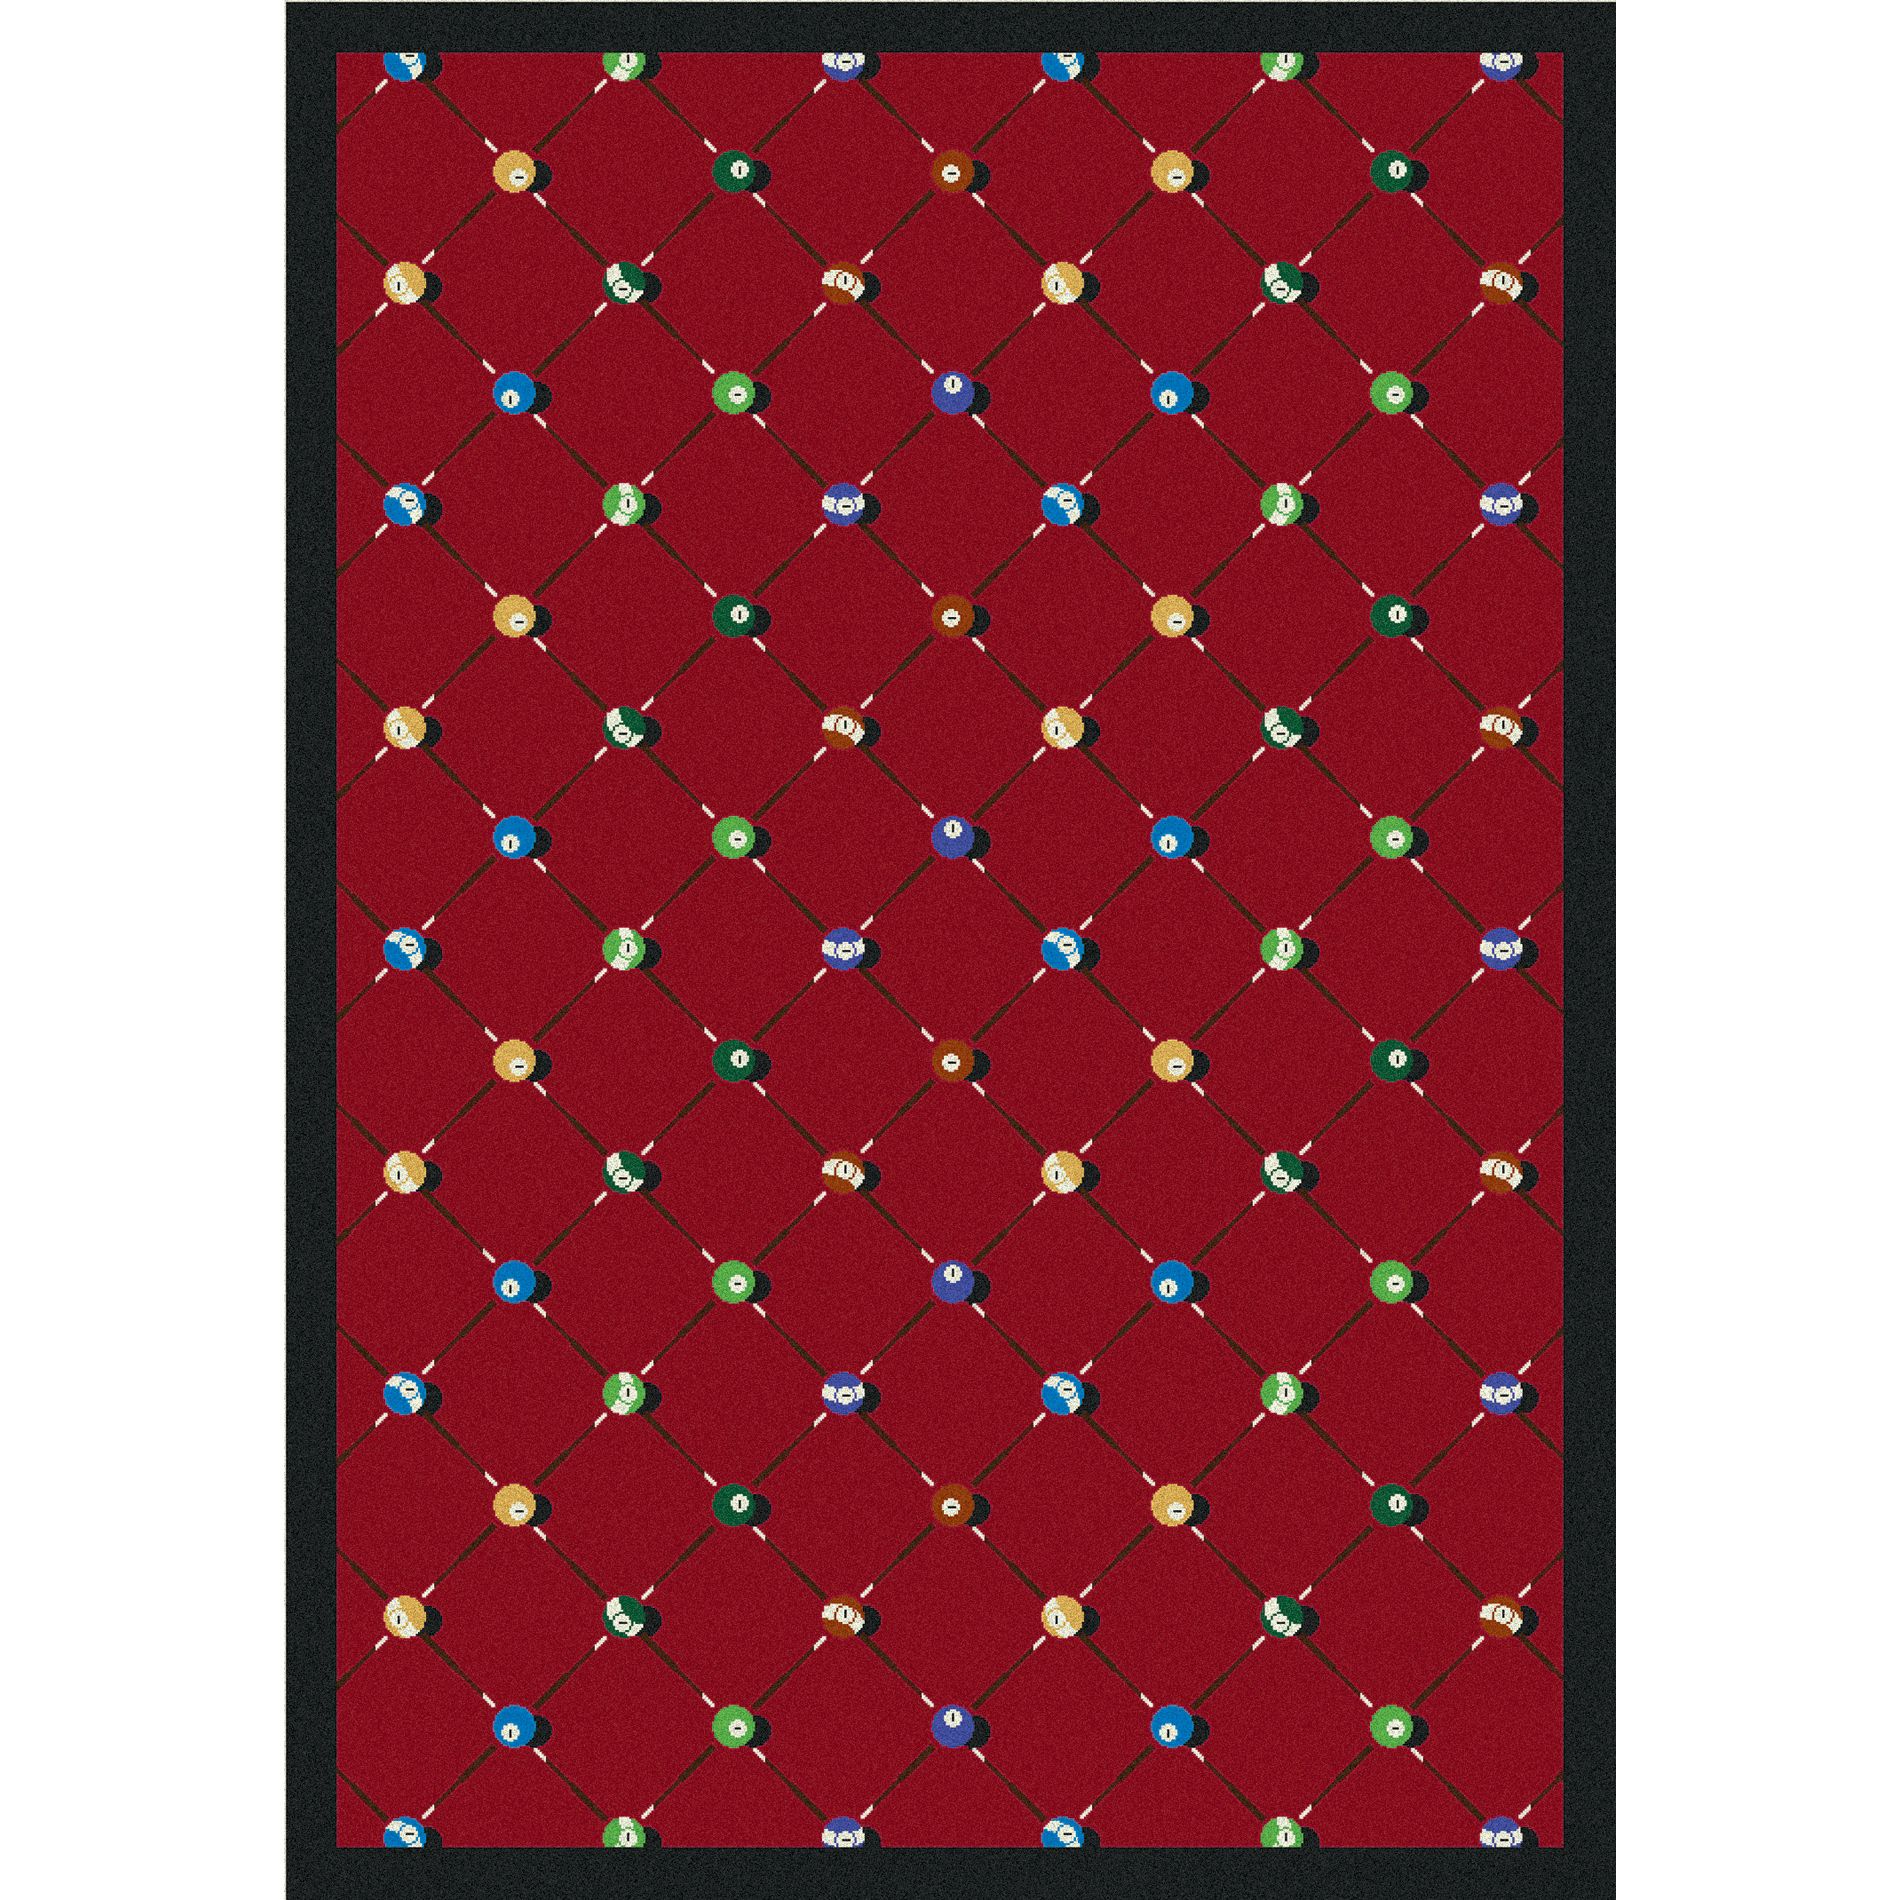 Joy Carpets Billiards 3'10" x 5'4" Area Rug